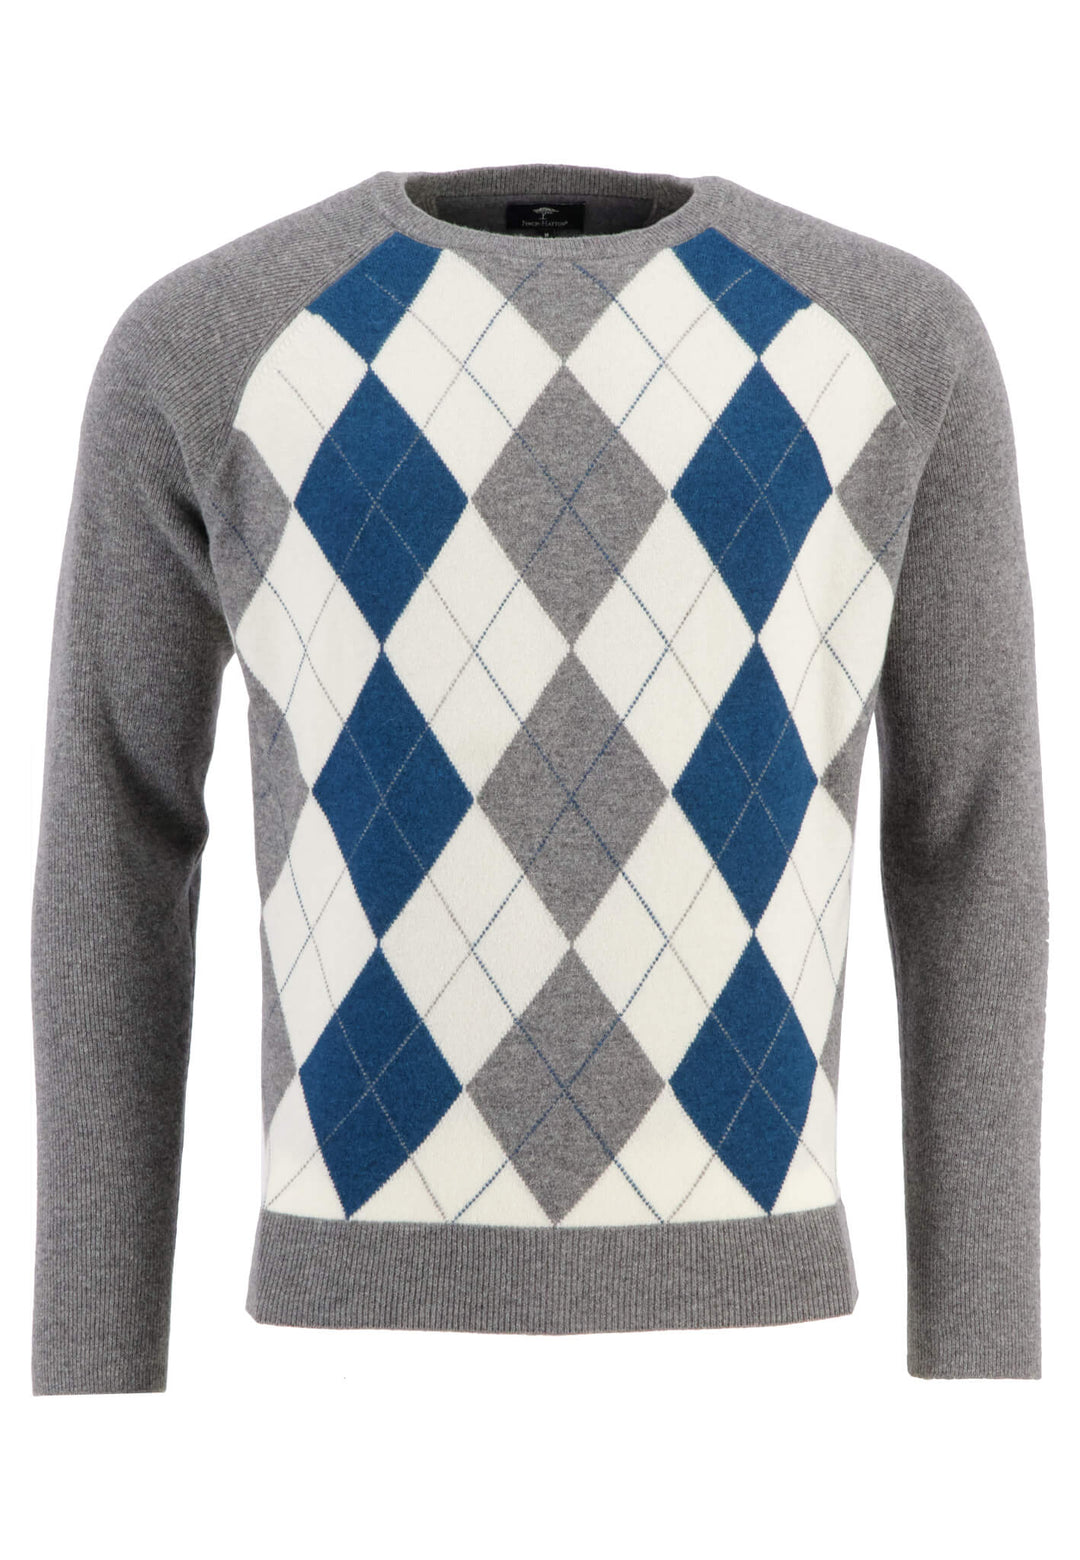 | & sweater Men\'s Shop – Online Offizieller FYNCH-HATTON jackets knitted